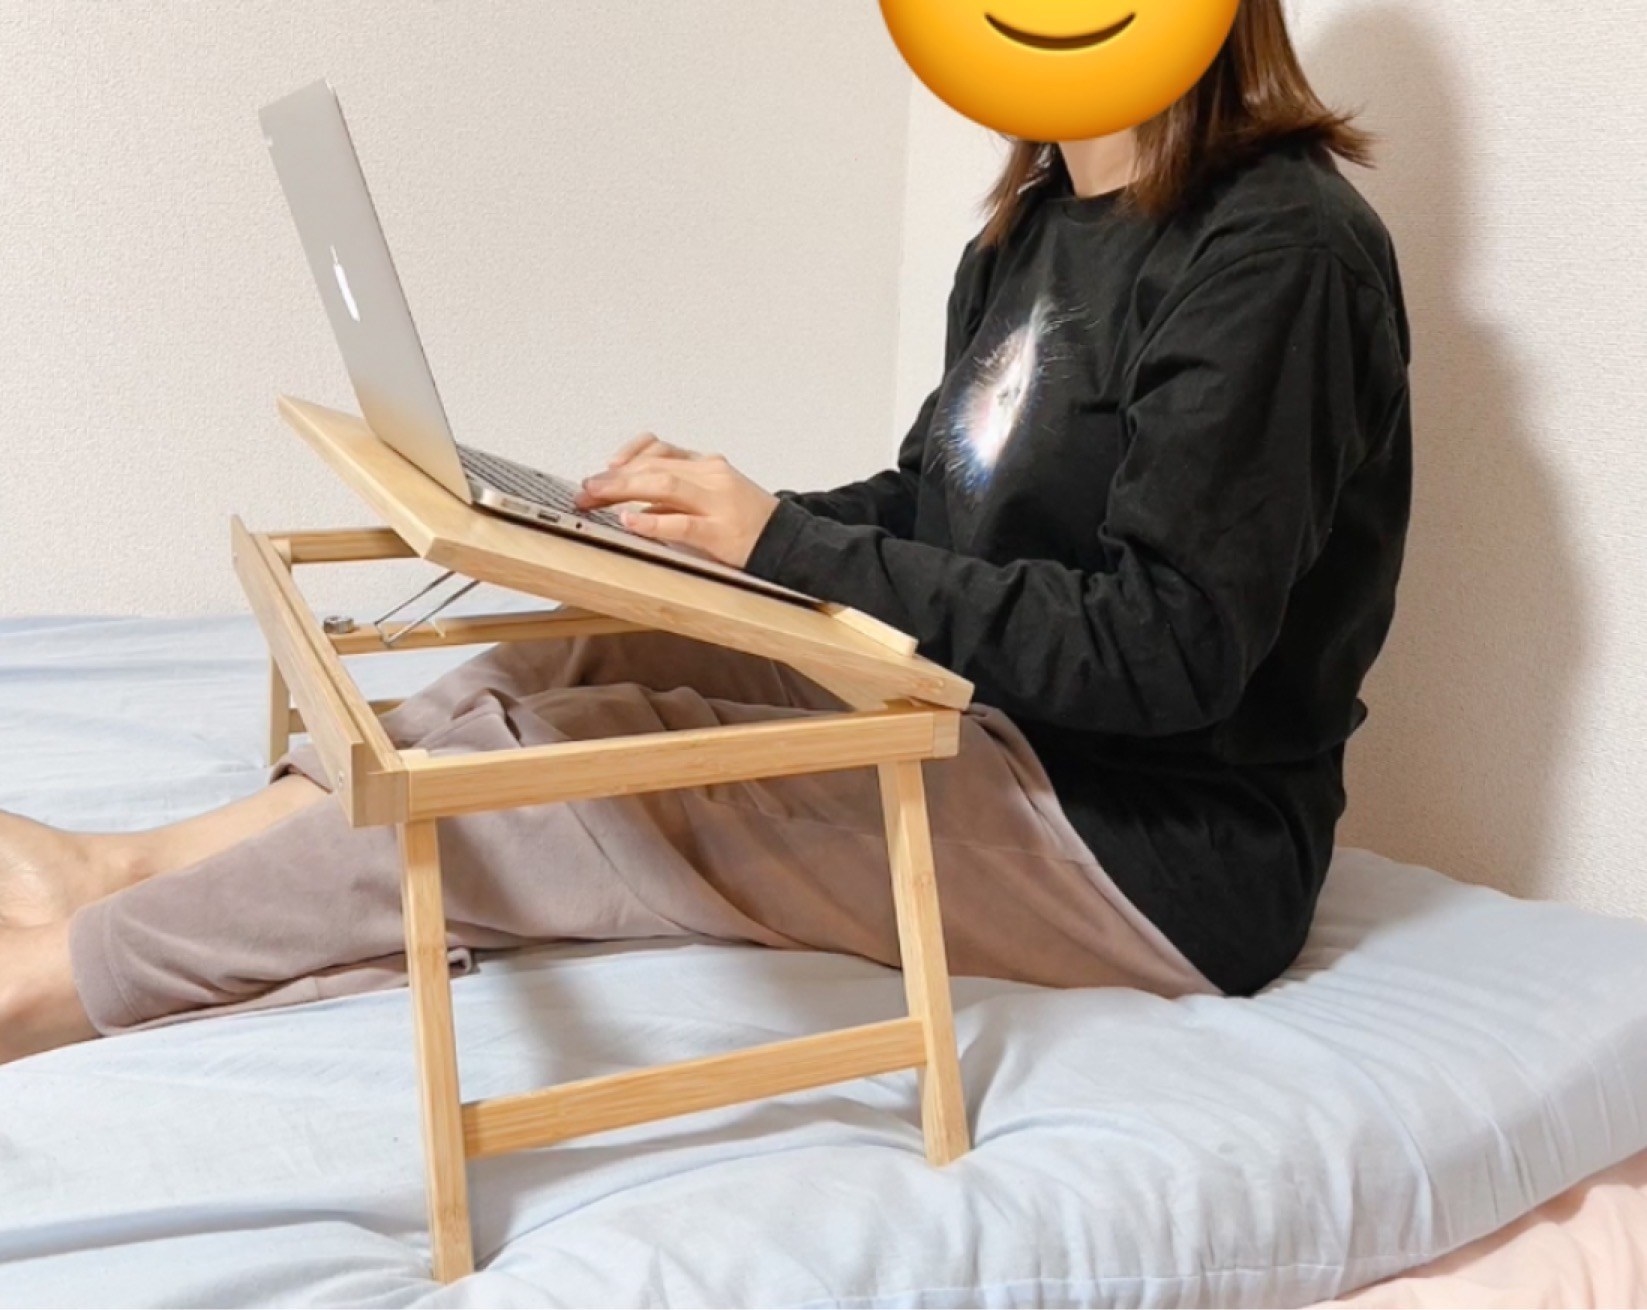 IKEA（イケア）のおすすめ便利アイテム「FELFRITT フェルフリット（ラップトップ/ベッドトレイ）」ベッドの上でパソコン作業ができる